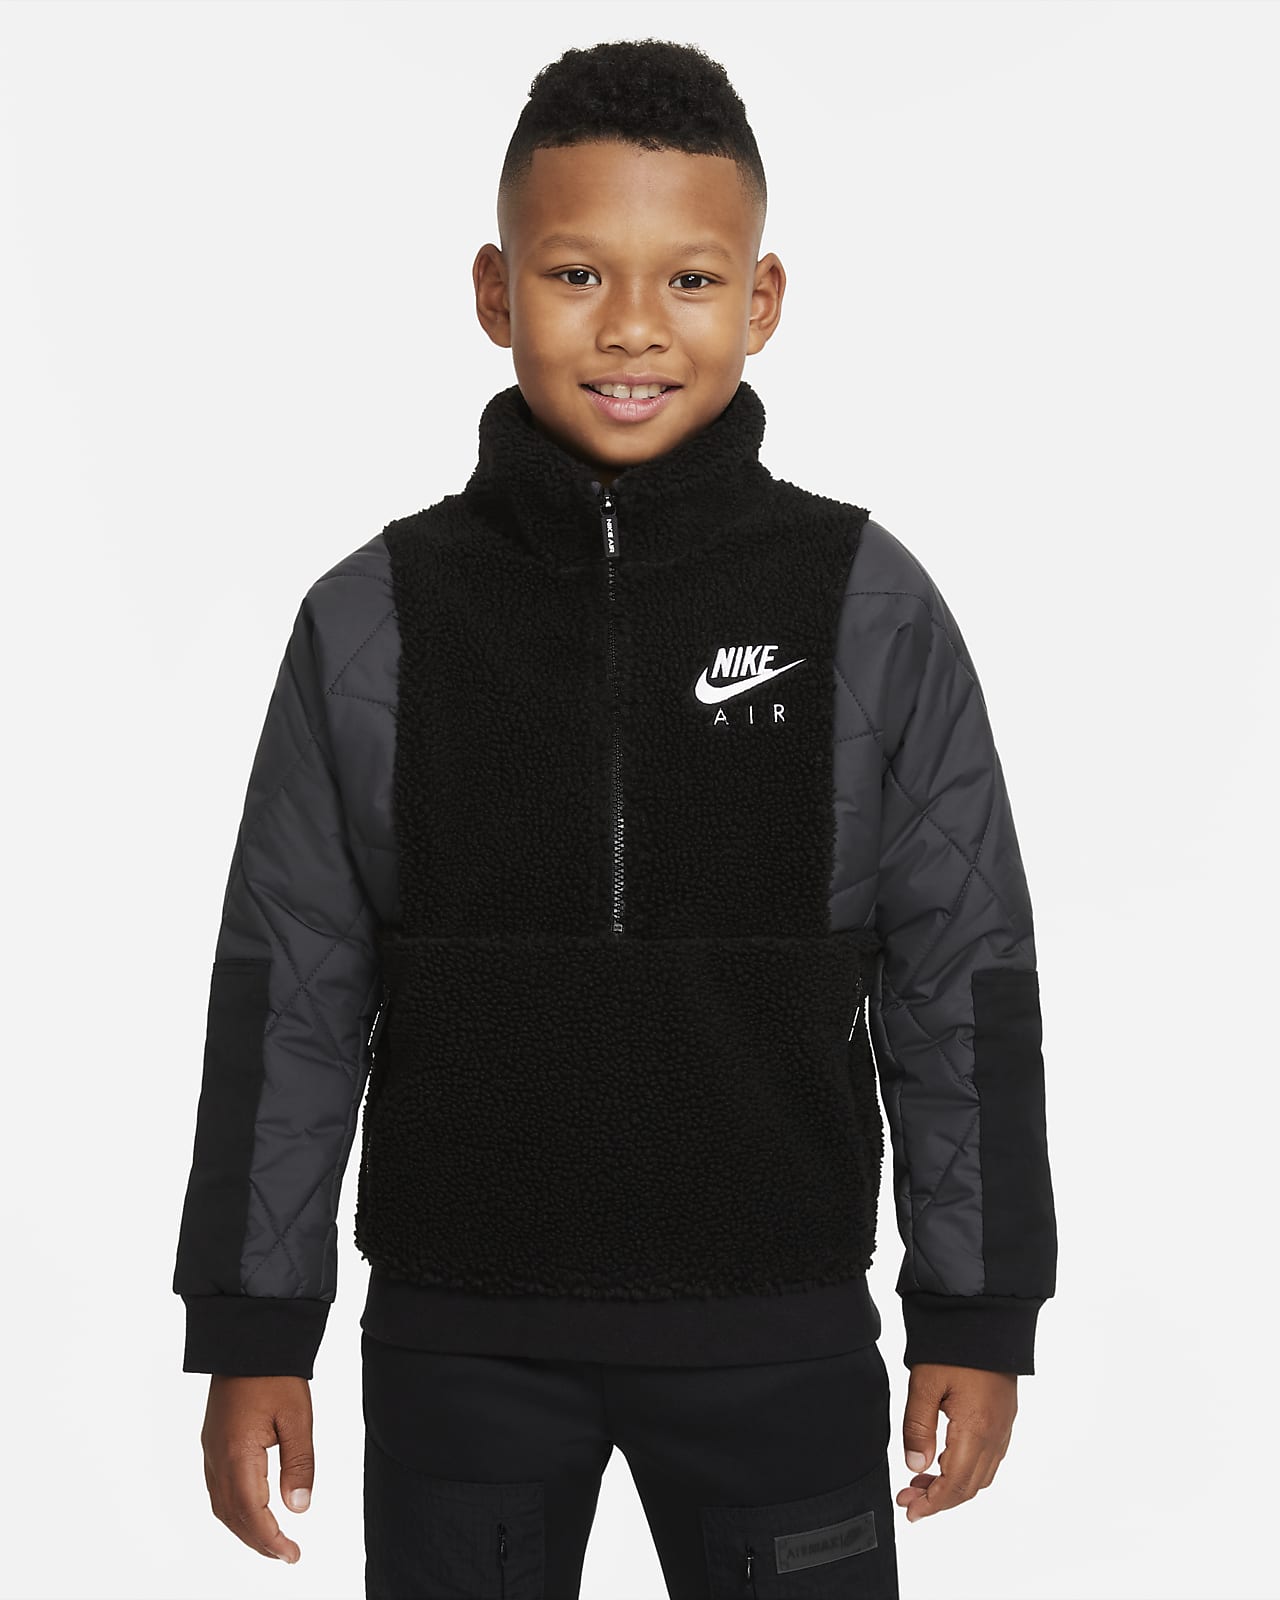 Nike Air vinteroverdel til store barn (gutt)